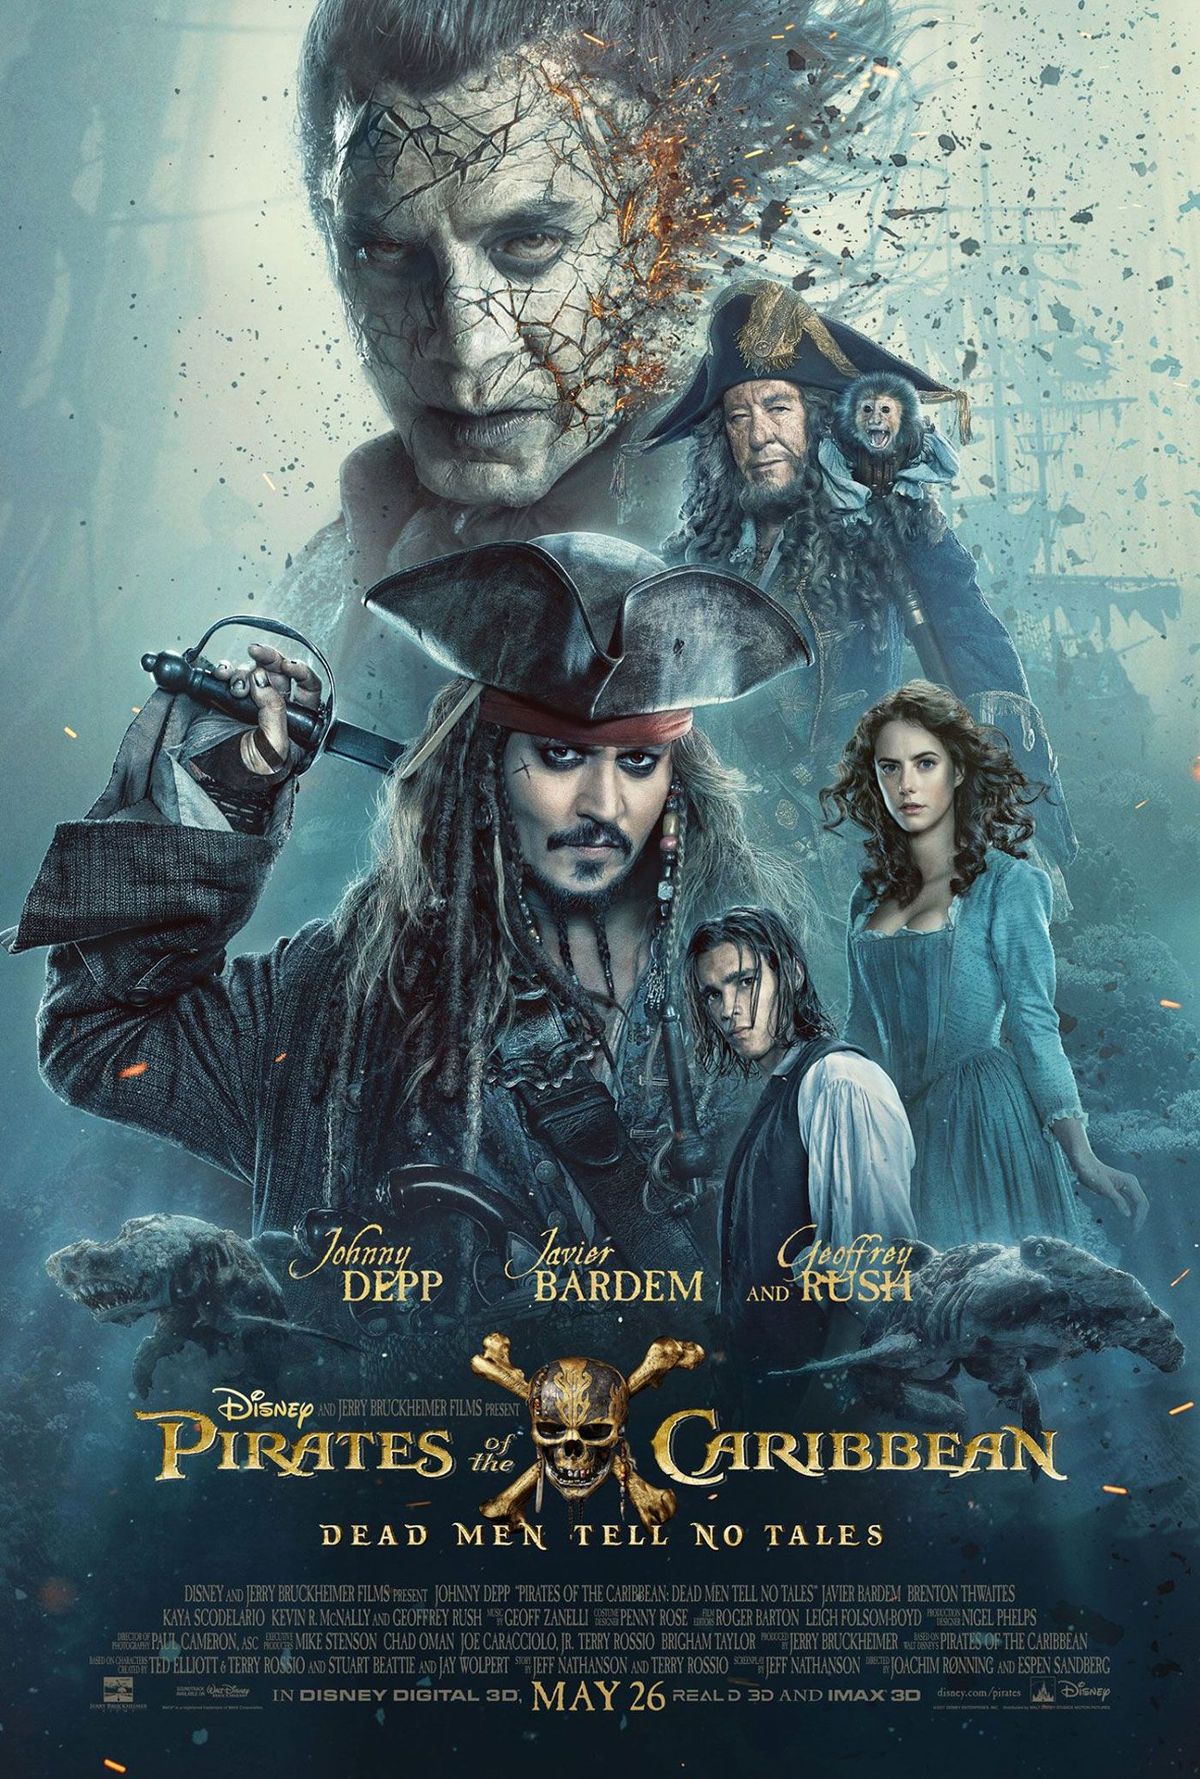 LOOK: Pôster de Piratas do Caribe reúne a tripulação marítima de Jack Sparrow